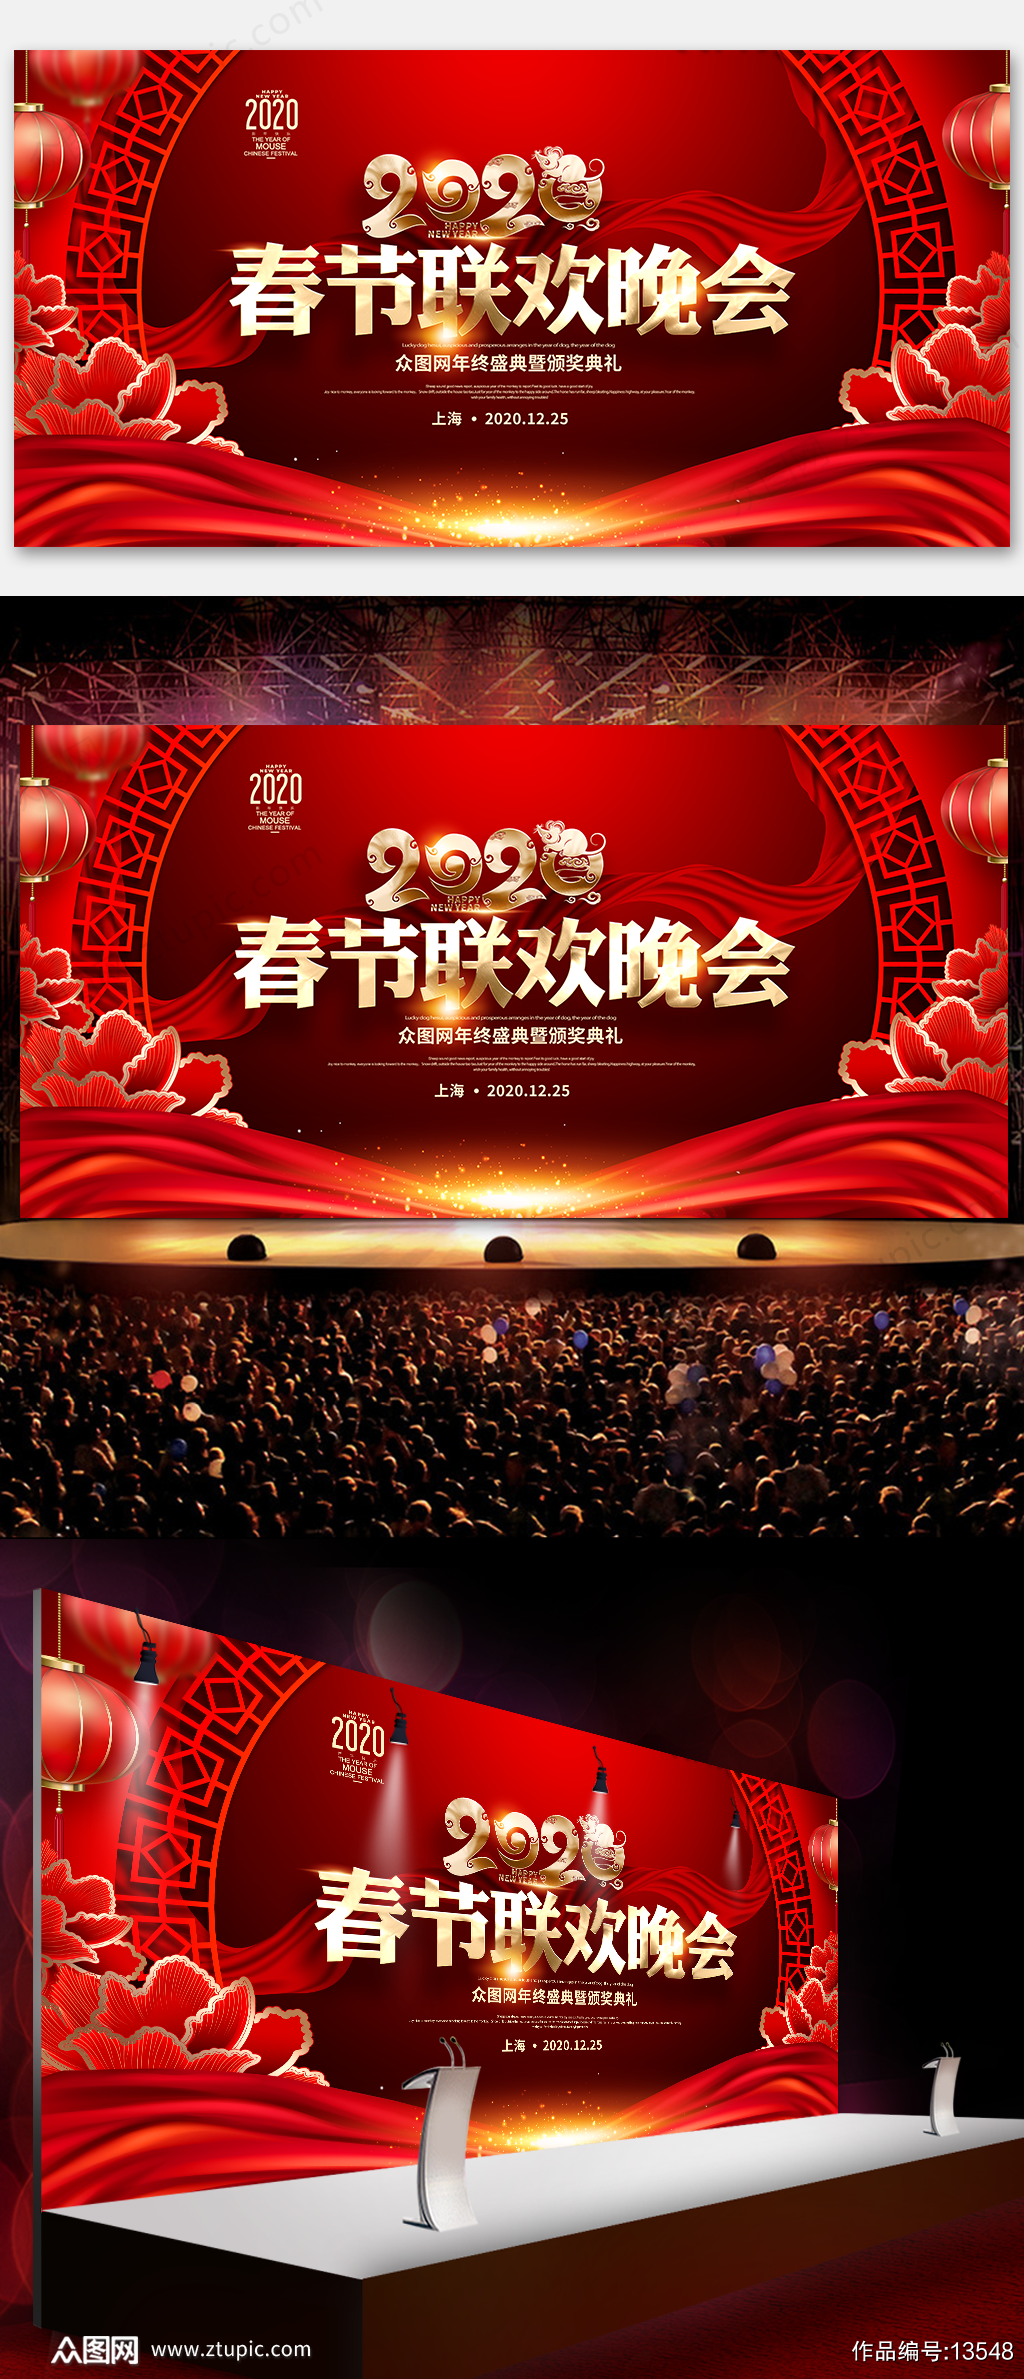 春节联欢晚会舞台背景 春节物料素材下载 众图网